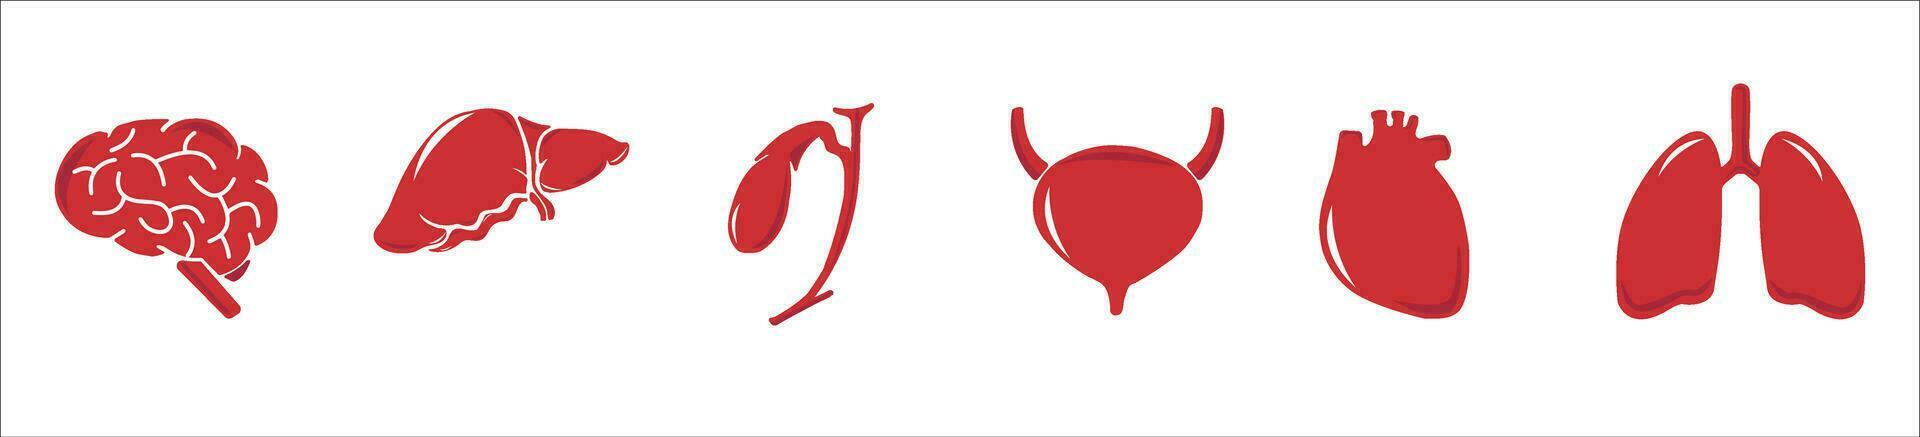 umano interno organi. vettore schizzo isolato illustrazione. mano disegnato scarabocchio anatomia simboli impostare.